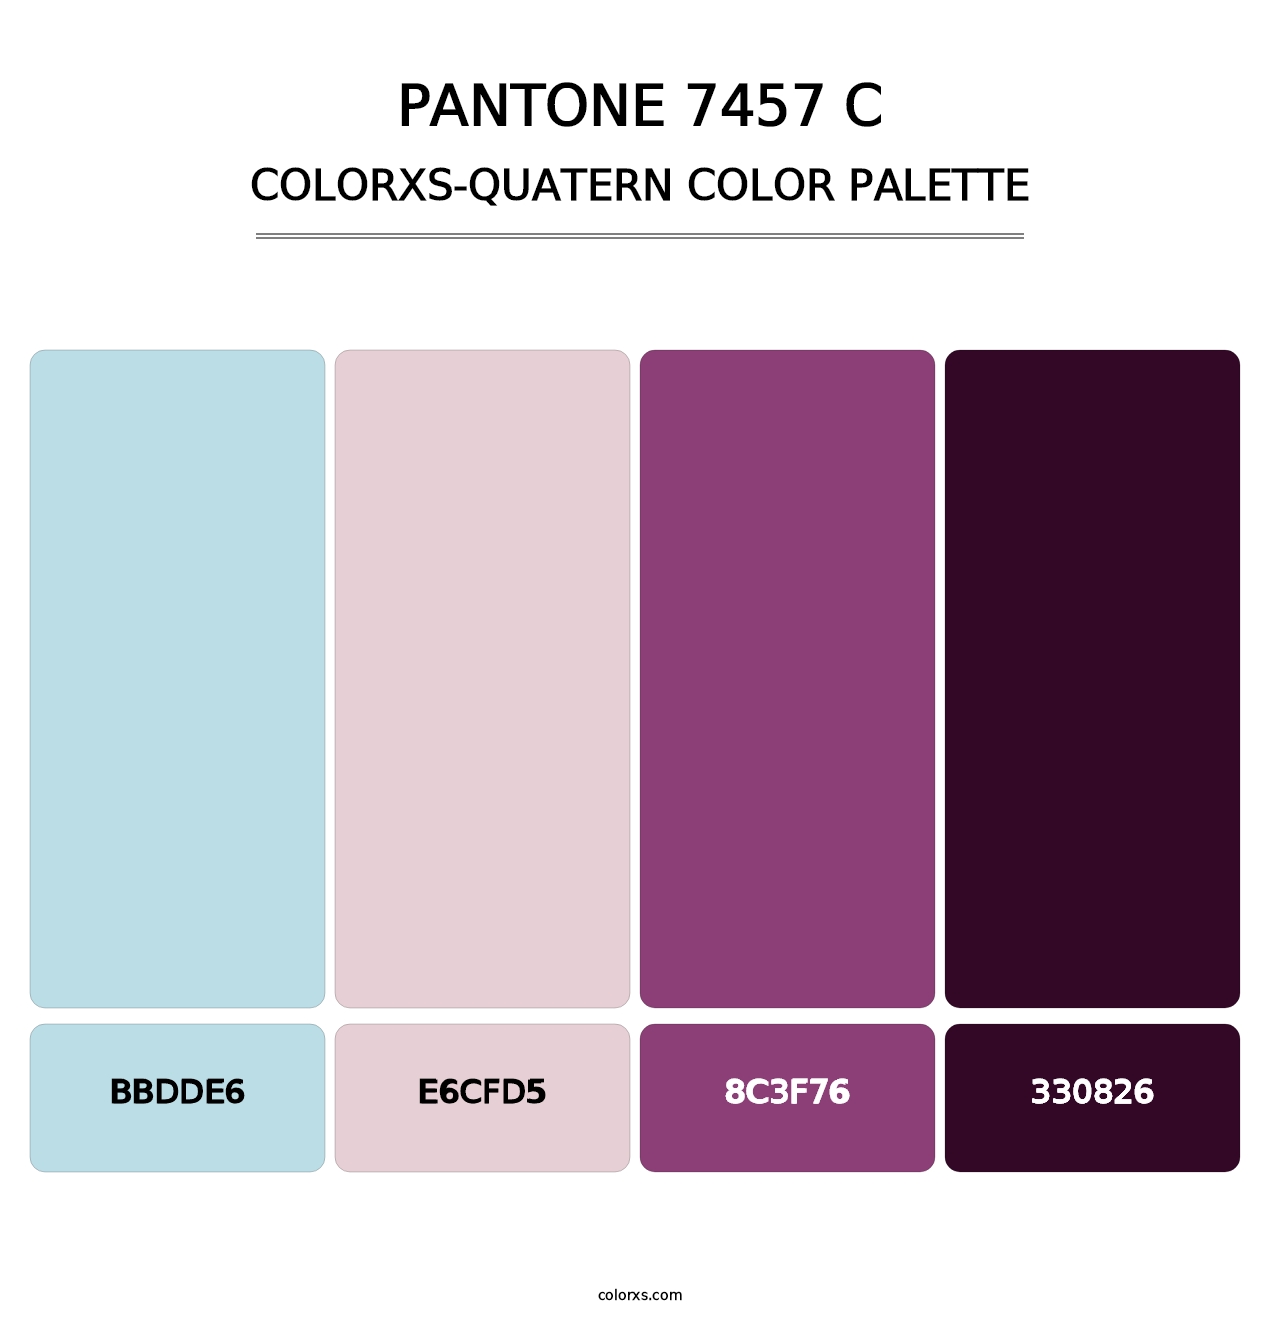 PANTONE 7457 C - Colorxs Quatern Palette